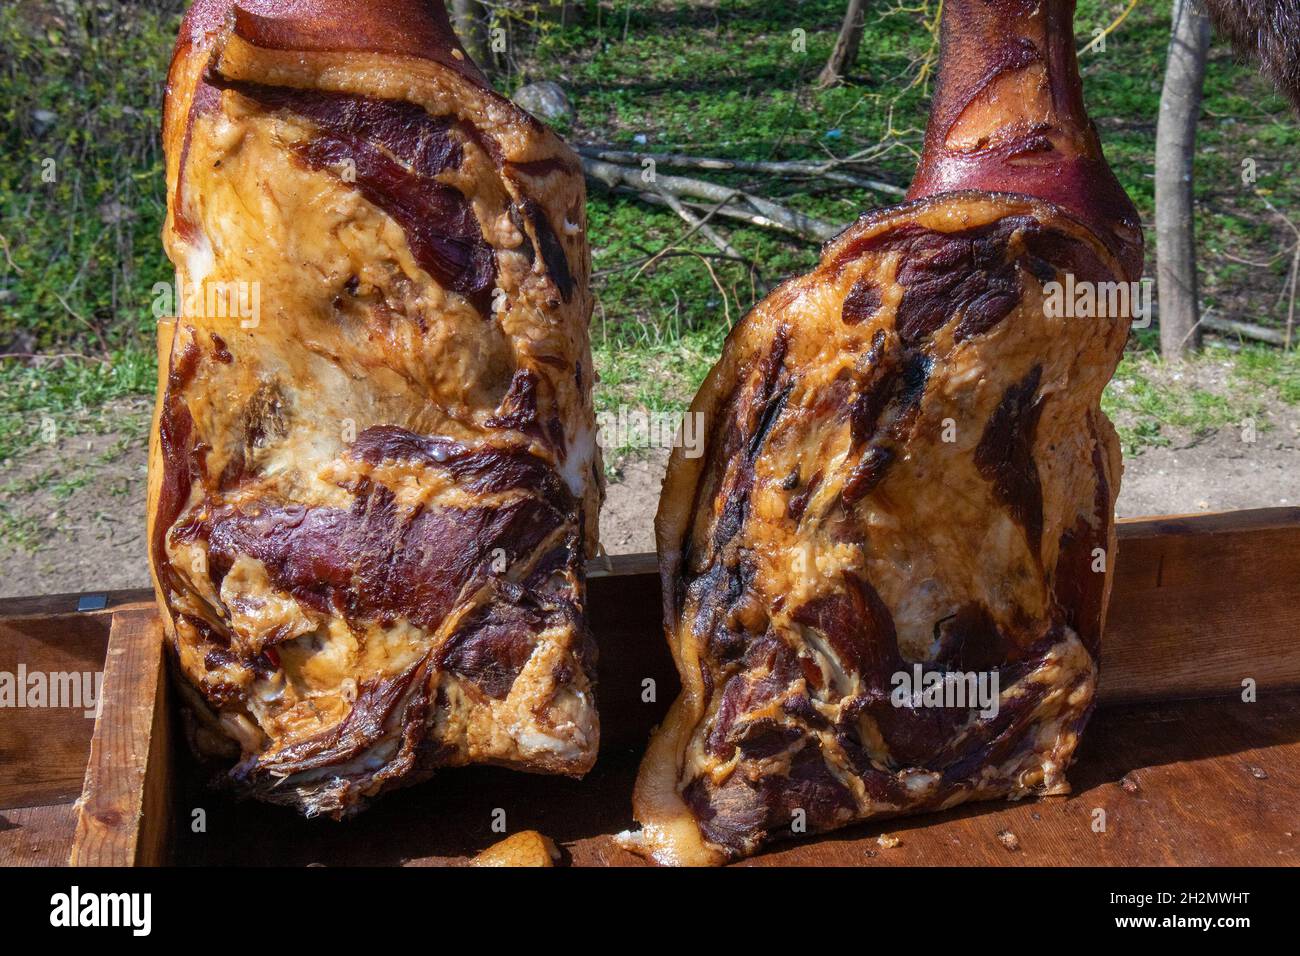 Dos apetitosos jamones de cerdo ahumado caseros colgados sobre ganchos en la tienda de comercio justo del pueblo Foto de stock